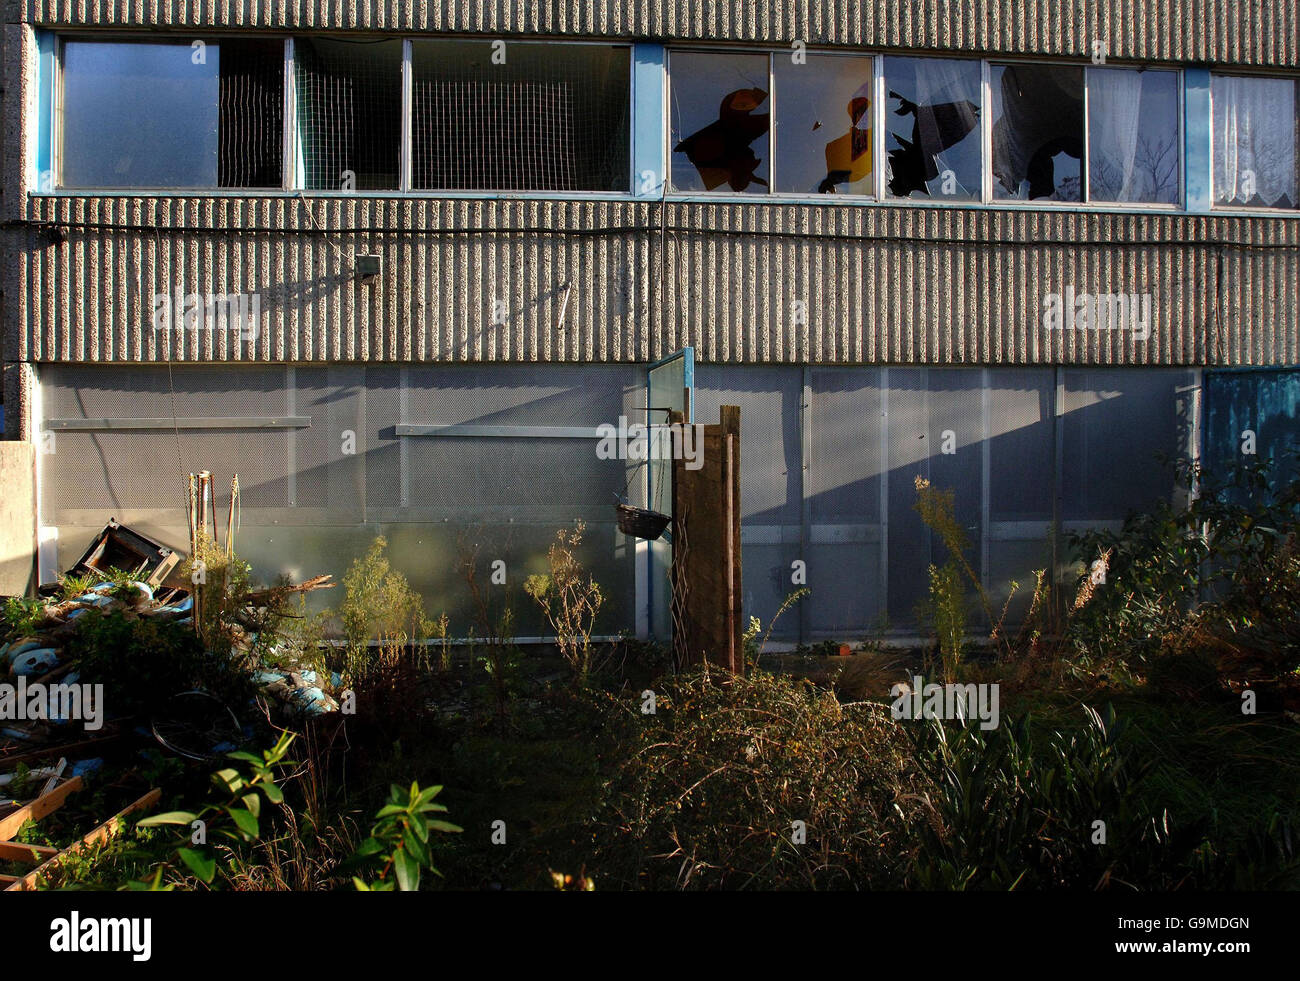 Stock de décomposition urbaine.Vue sur les appartements délabré avec fenêtres batsées sur le domaine Ferrier à Kidbrooke, sud-est de Londres. Banque D'Images